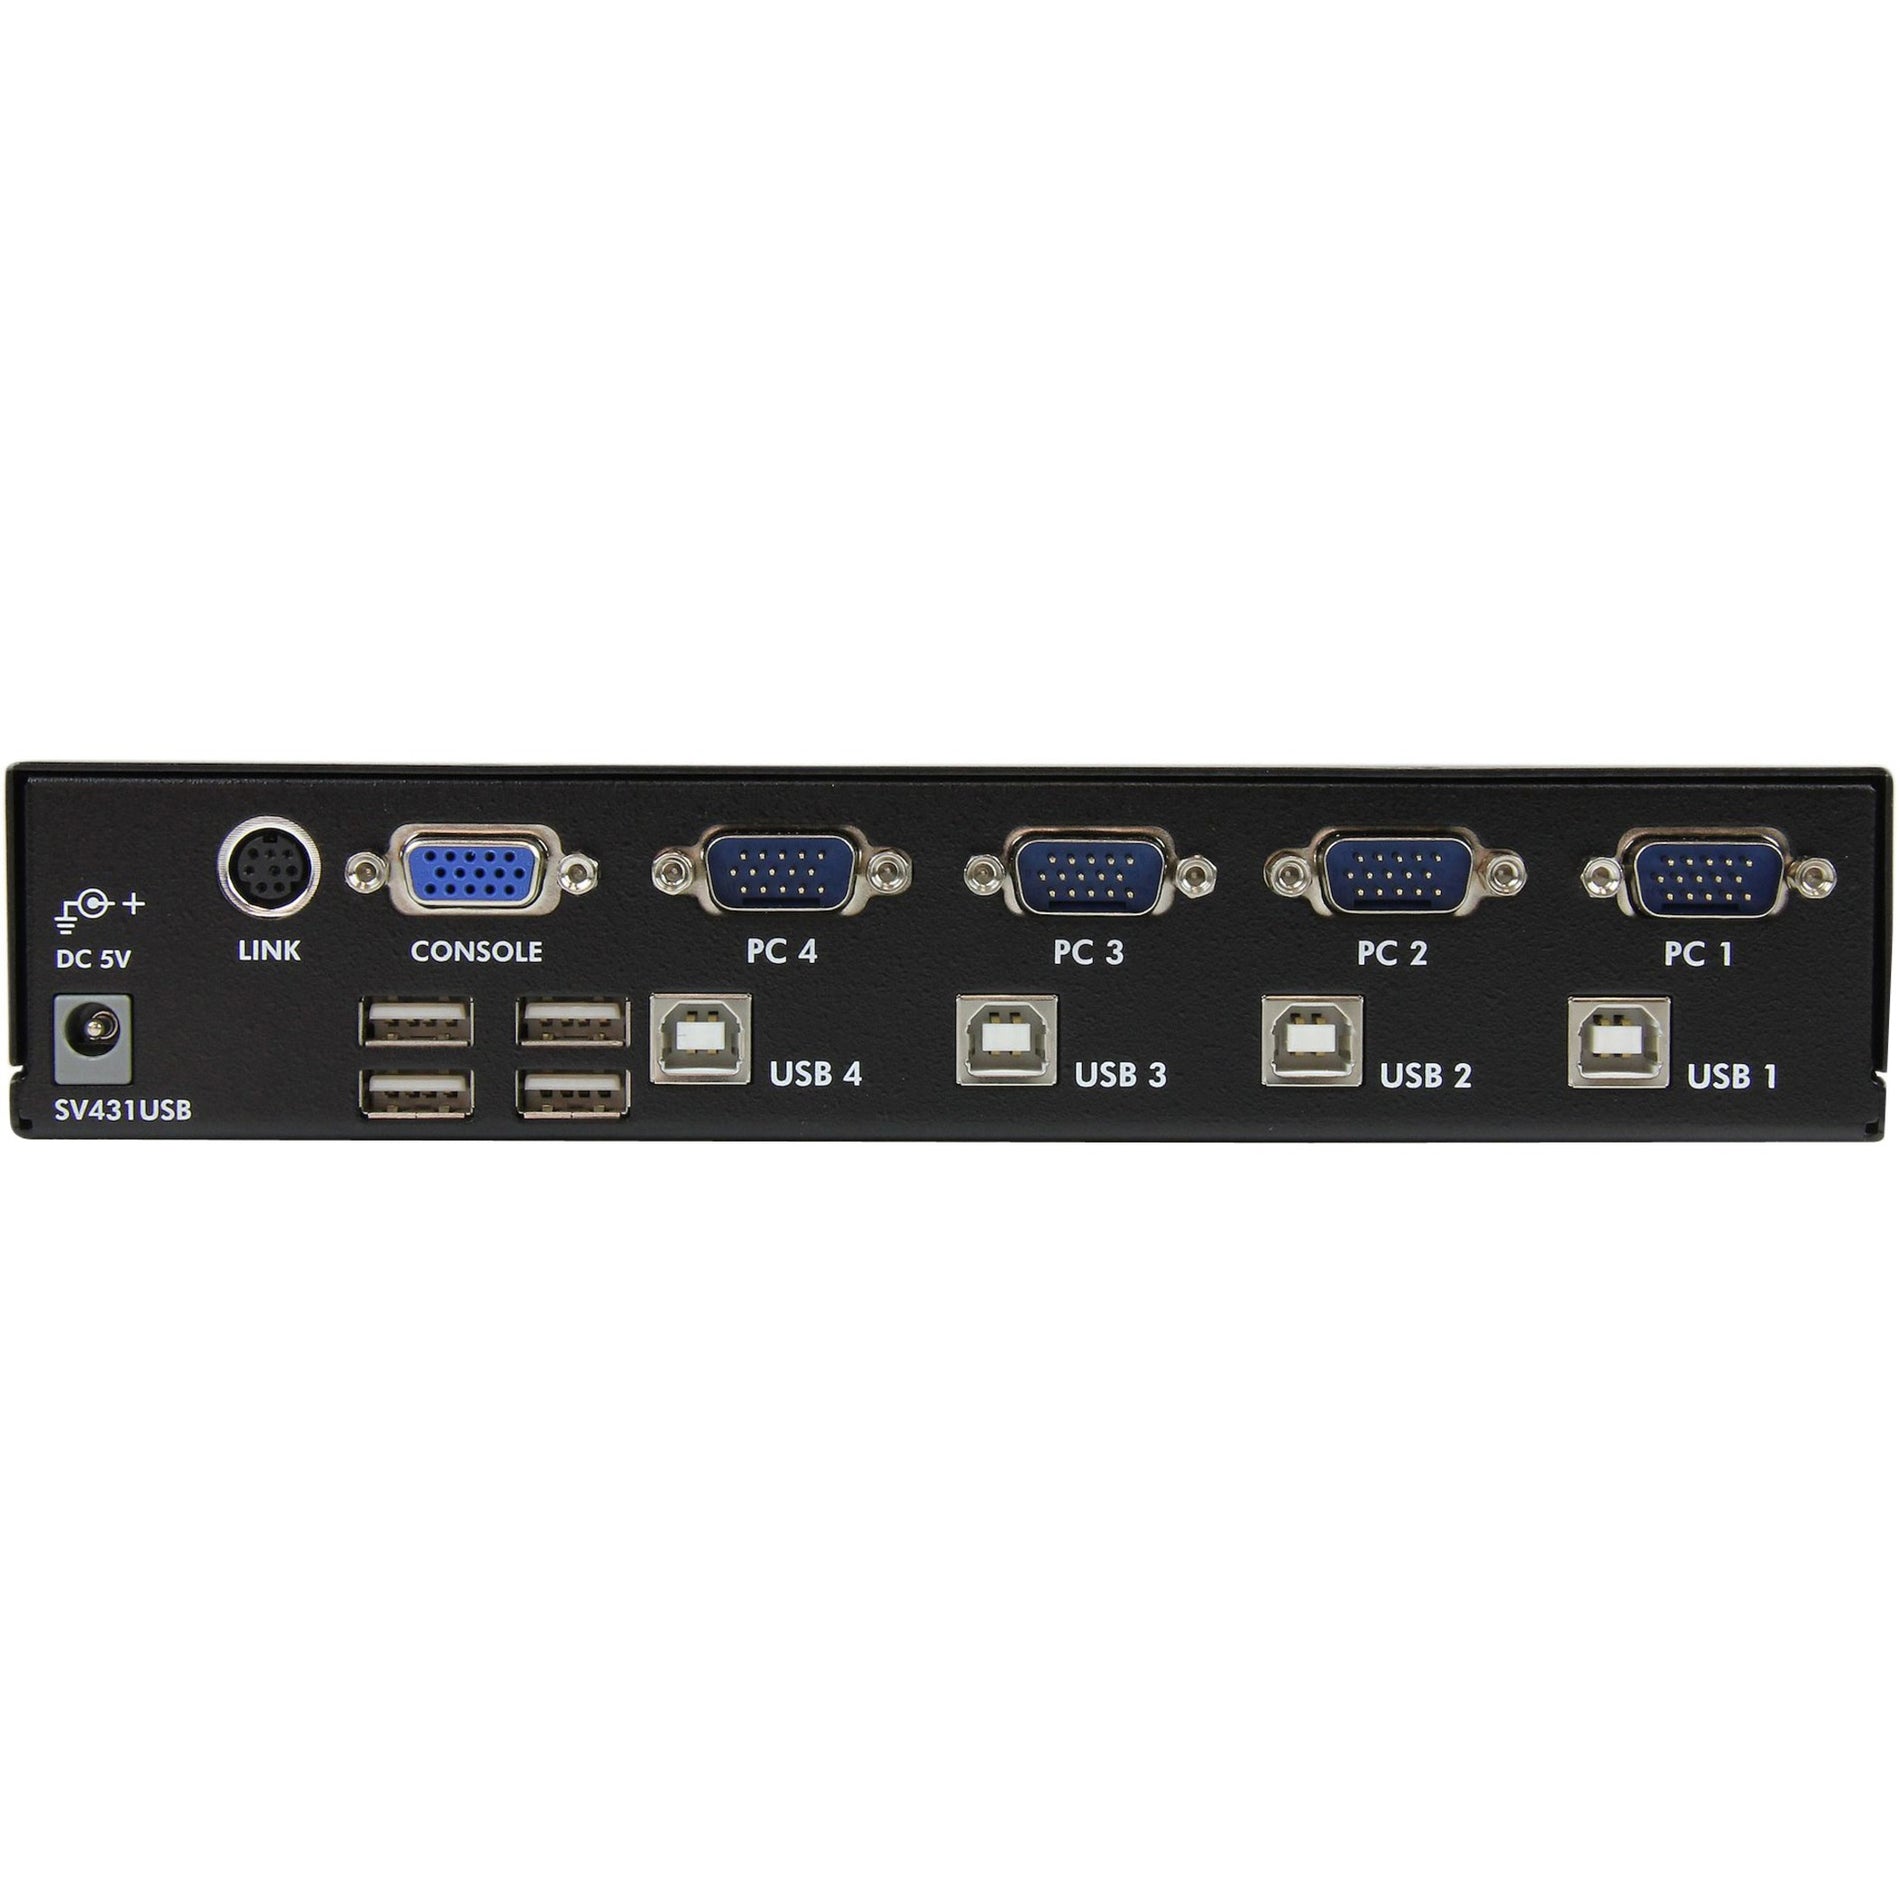 StarTech.com SV431USB 4 Port Professional VGA USB KVM Switch with Hub, Plug and Play, USB 2.0 Hub, Rack-Mountable